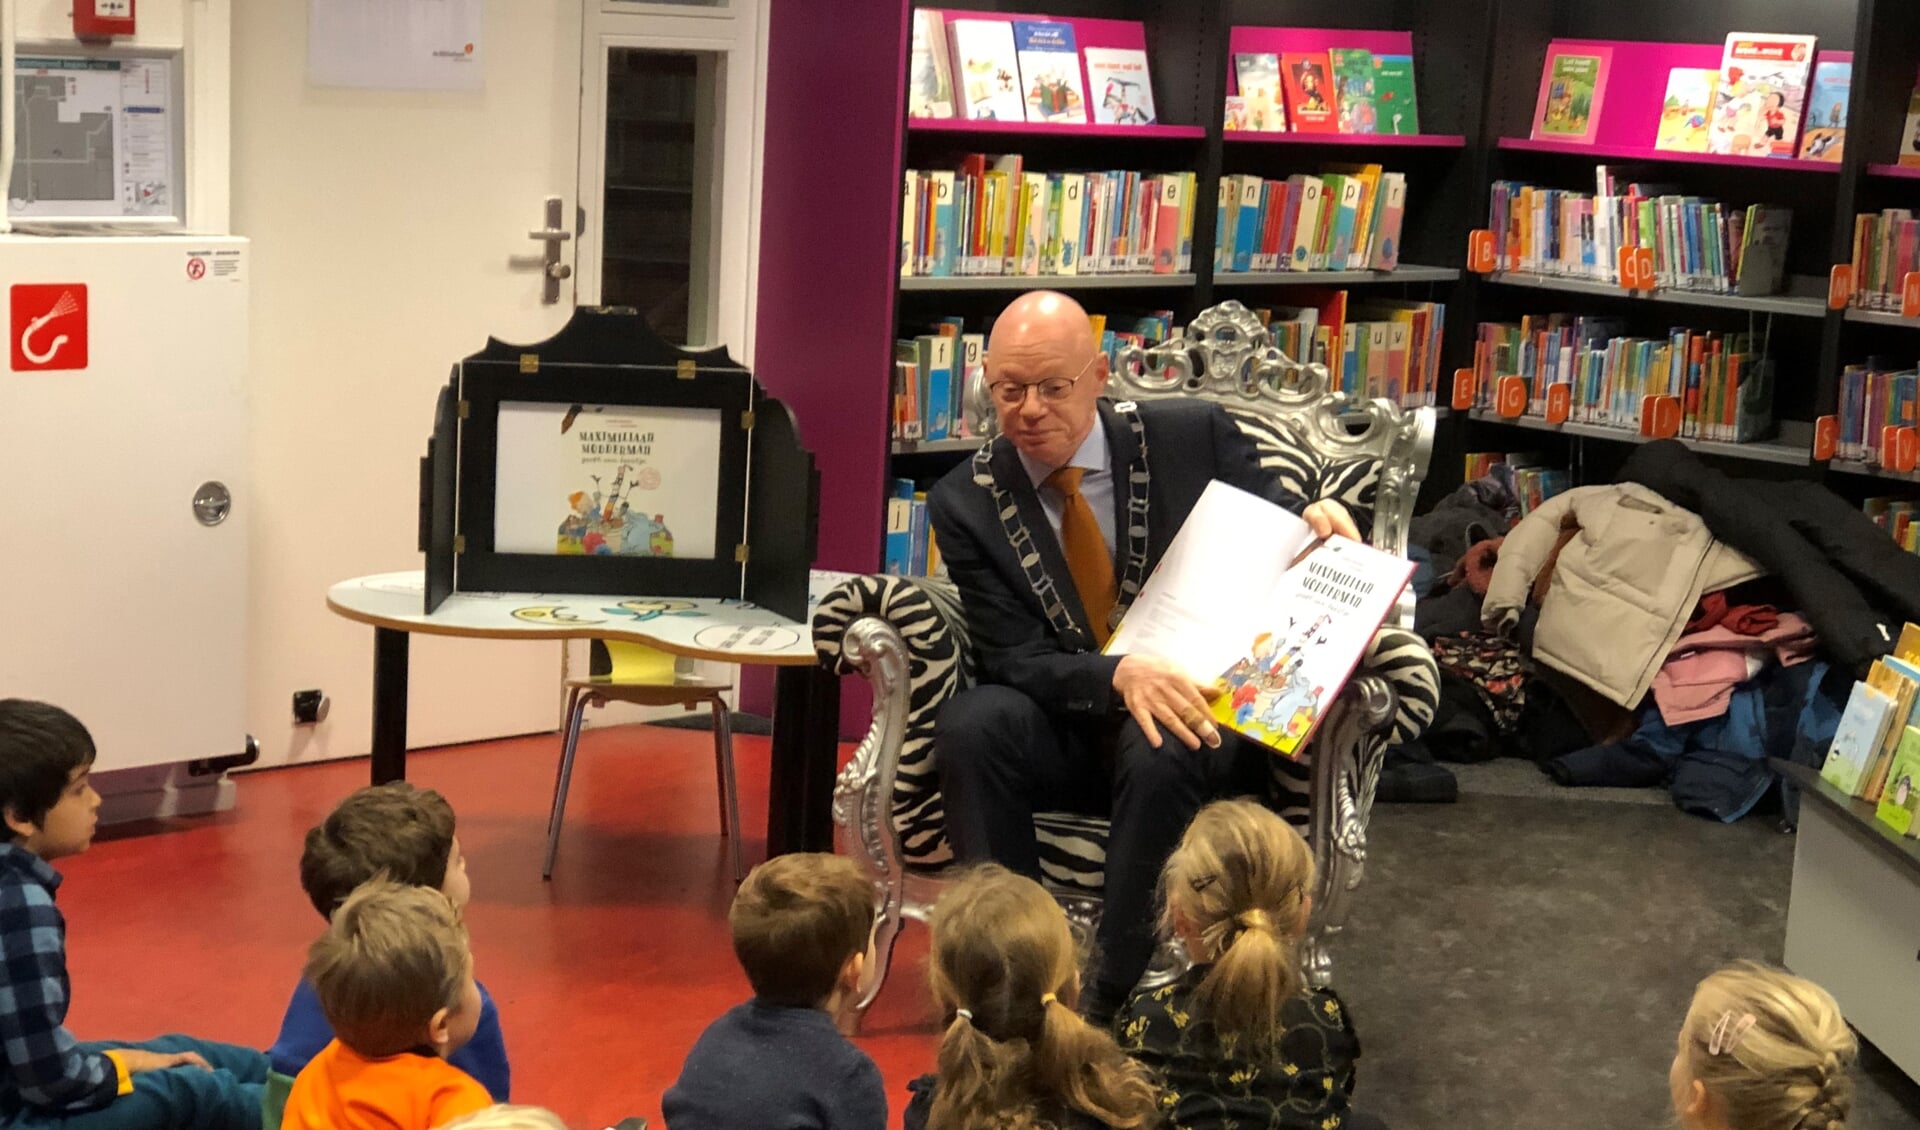 De burgemeester las de kinderen voor.